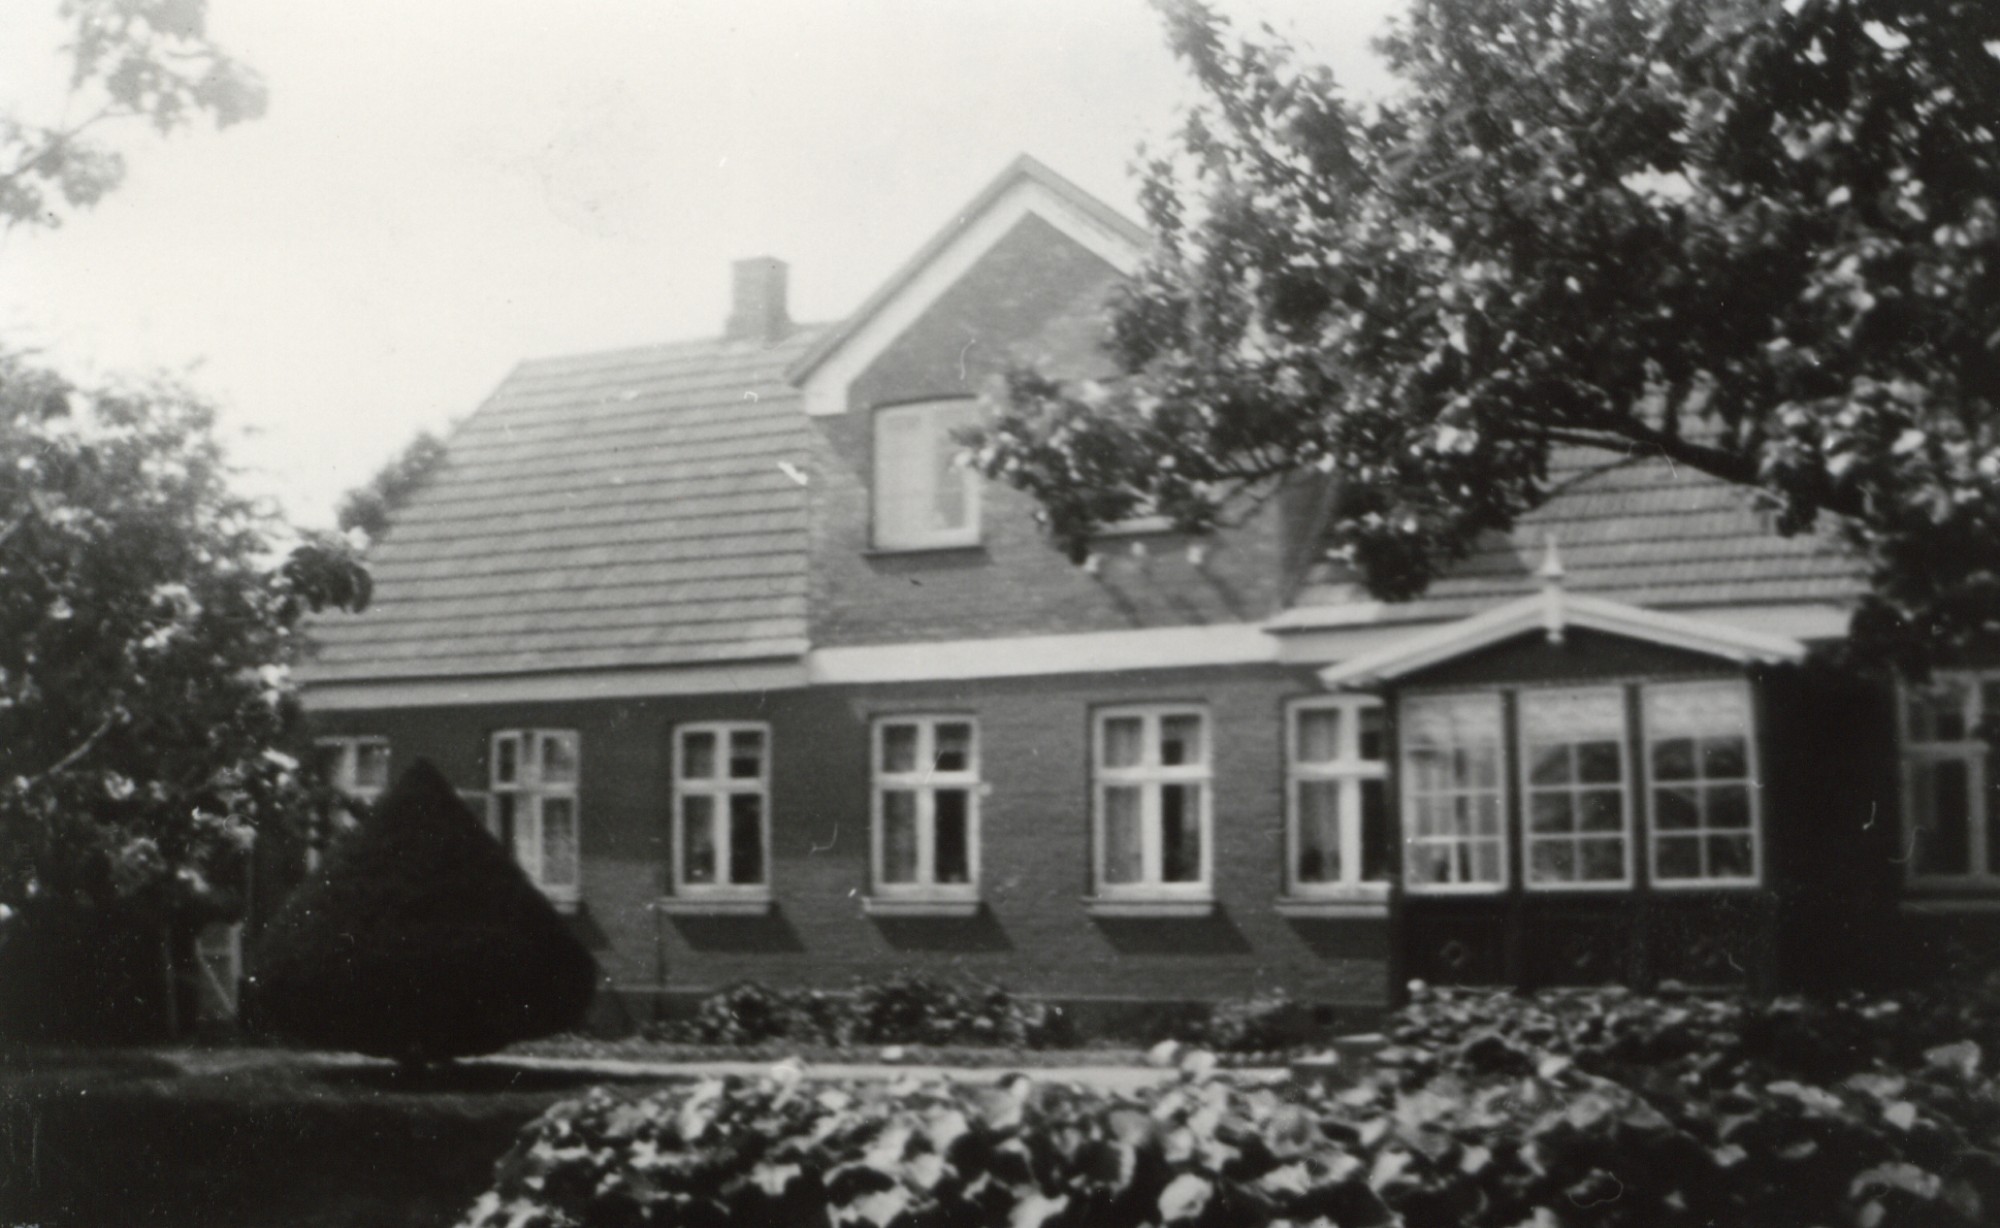 Lykkebjergvej 5 - ca. 1940 (B1458)